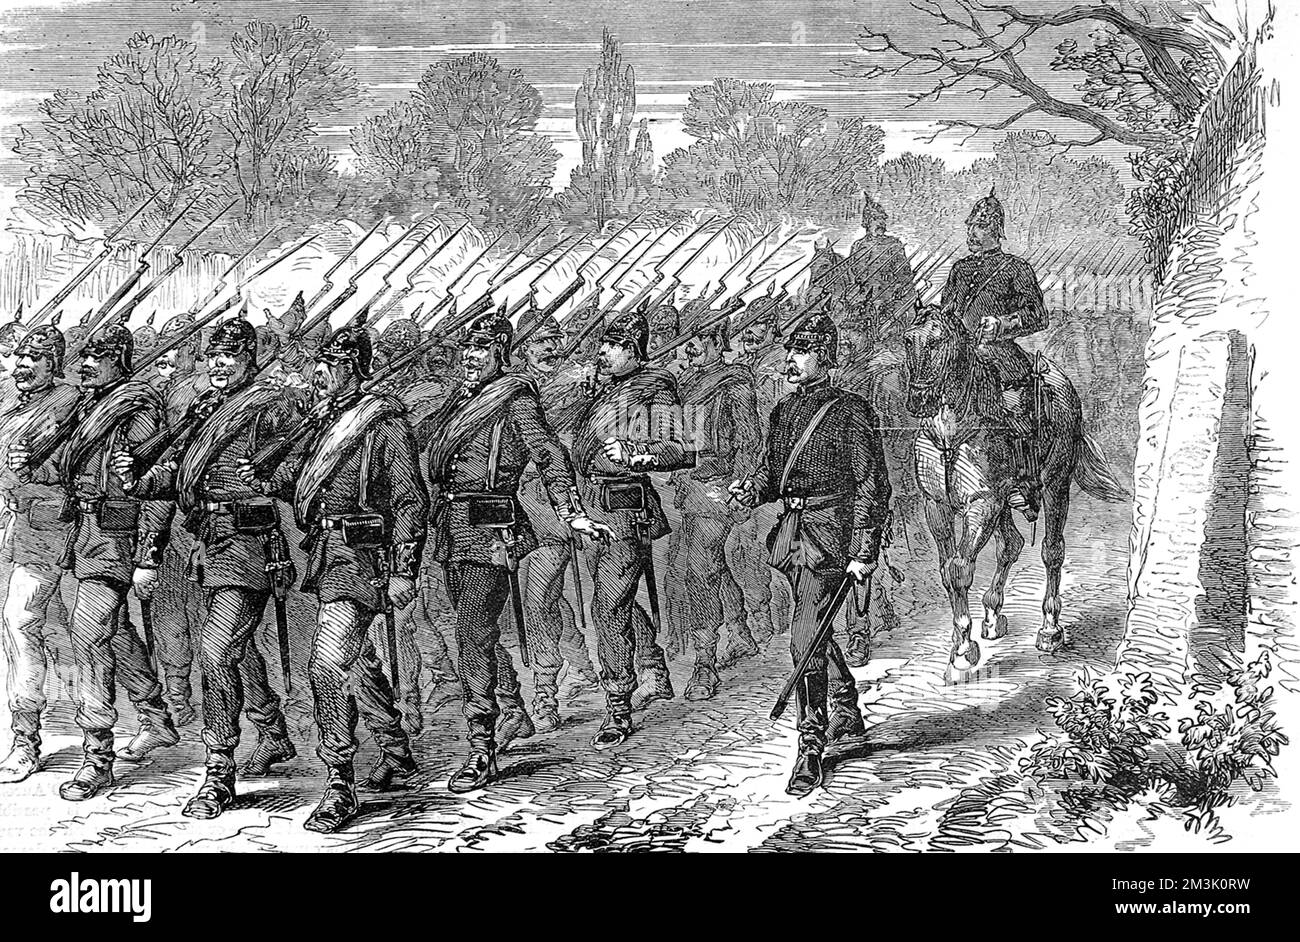 Das 24.. Preußische Regiment kehrte während der Belagerung von Paris im Winter 1870-1 aus der Schlacht zurück. Wie dieses Bild zeigt, waren die preußischen Truppen gut bewaffnet und sehr diszipliniert. Stockfoto